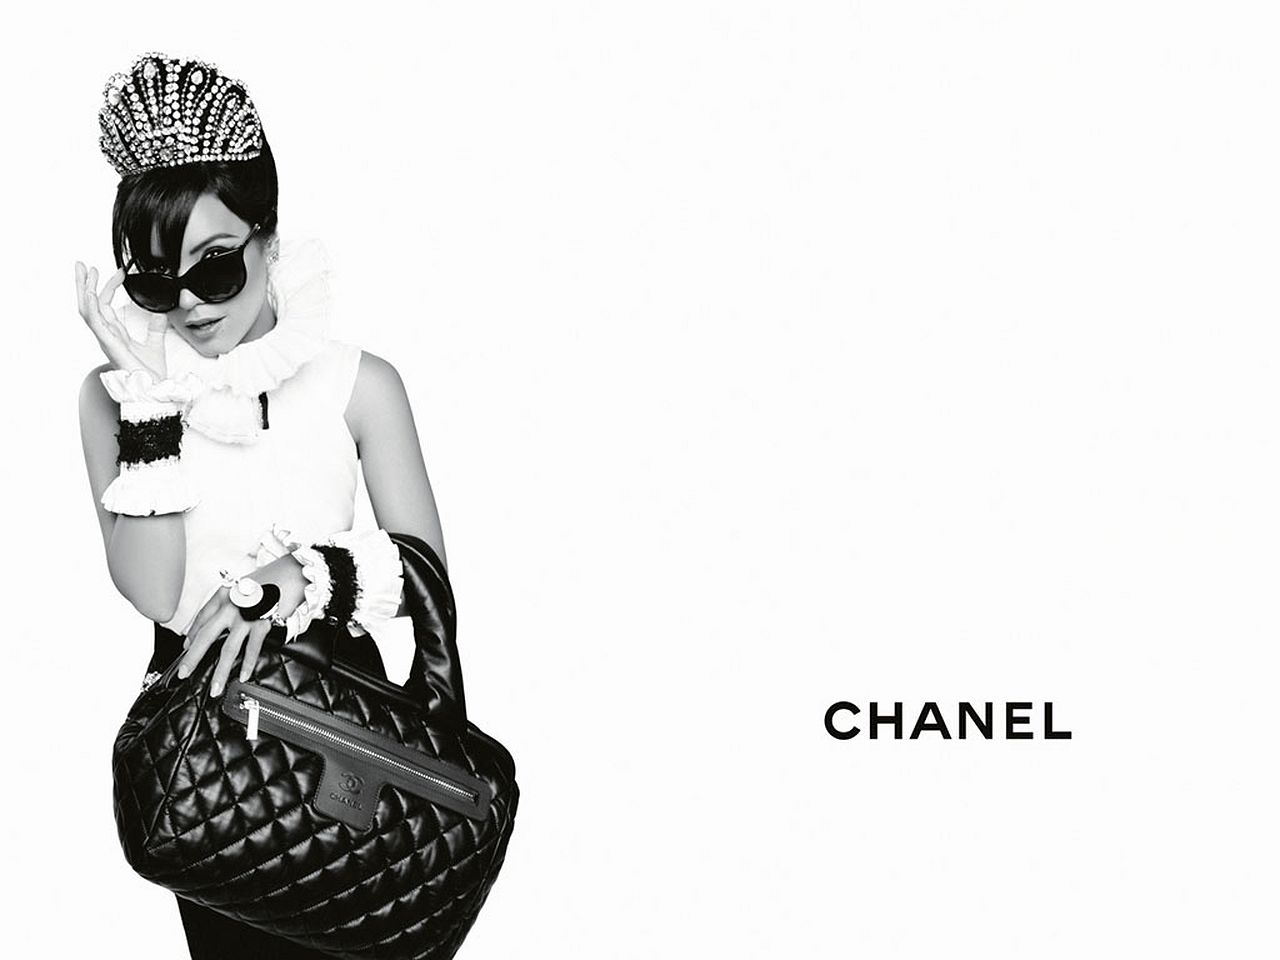 Fondos de Pantalla Marca Chanel CHANEL descargar imagenes